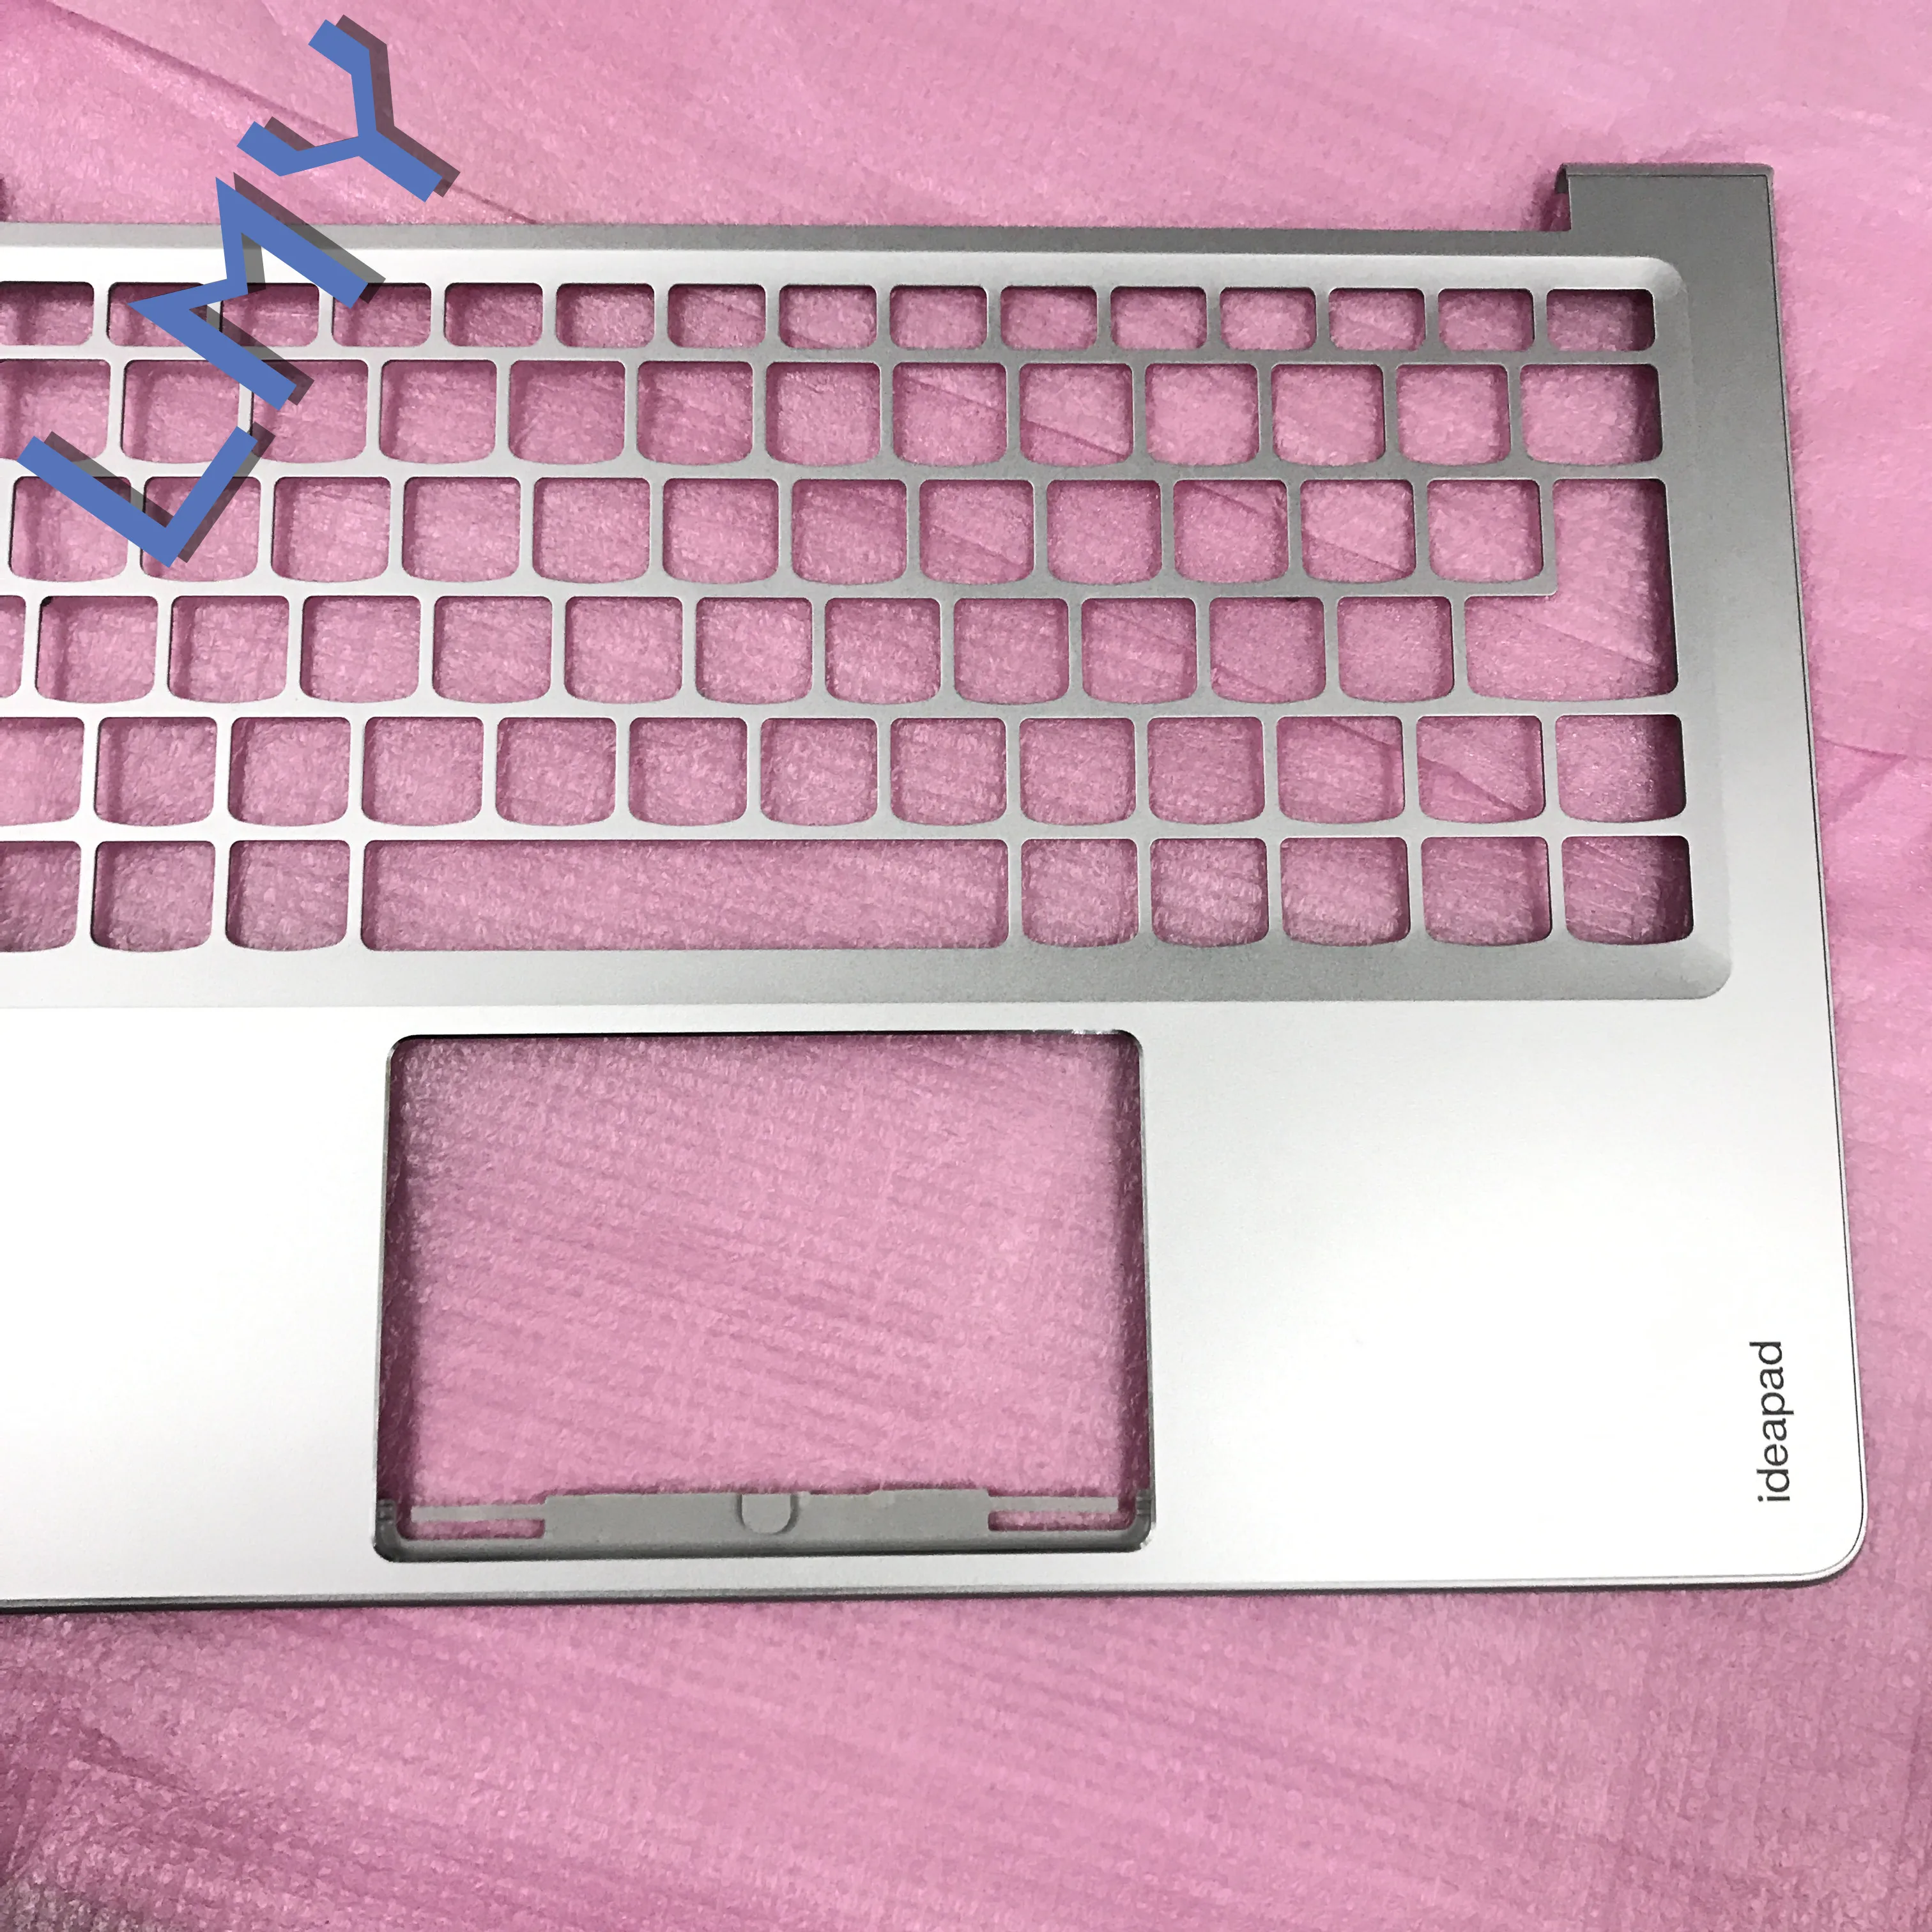 Фирменная новинка ноутбук Запчасти для LENOVO IDEAPAD 710S-13 Air13 Упор для рук клавиатура решетки серебристого цвета 5CB0L20718